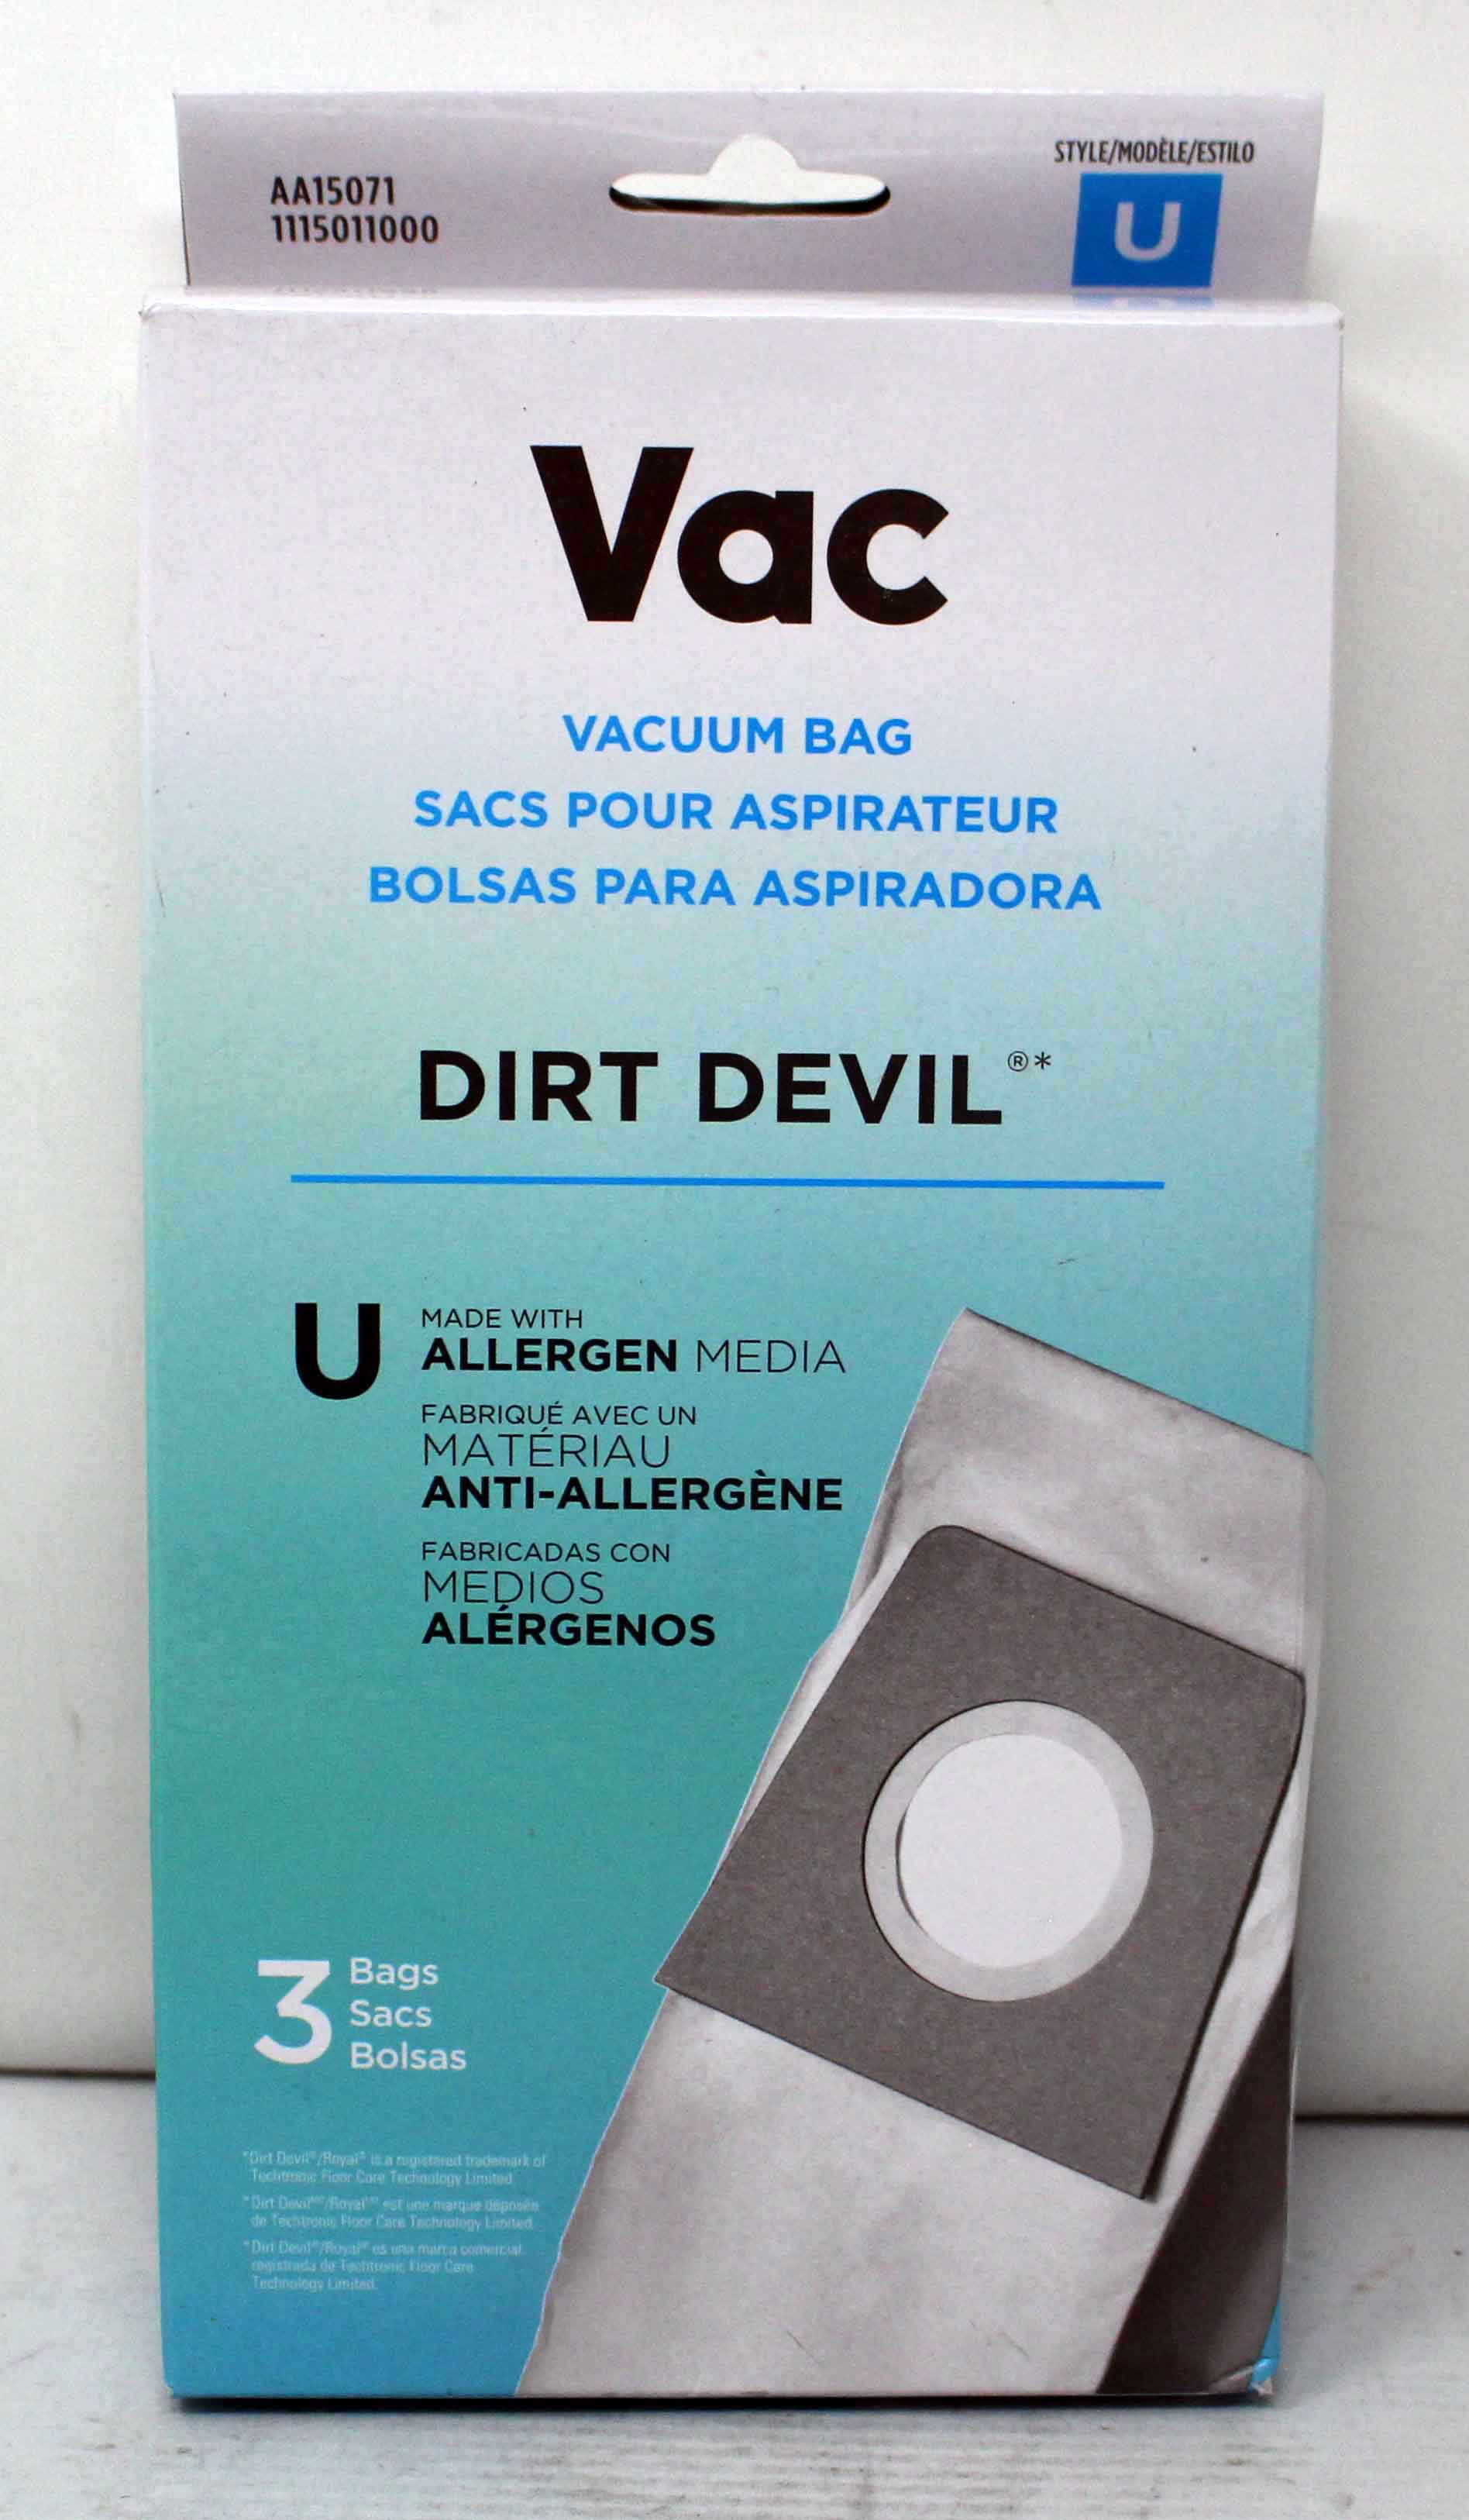 Dirt Devil Type U Allergen Filtration New Pack Of 3 Bags 